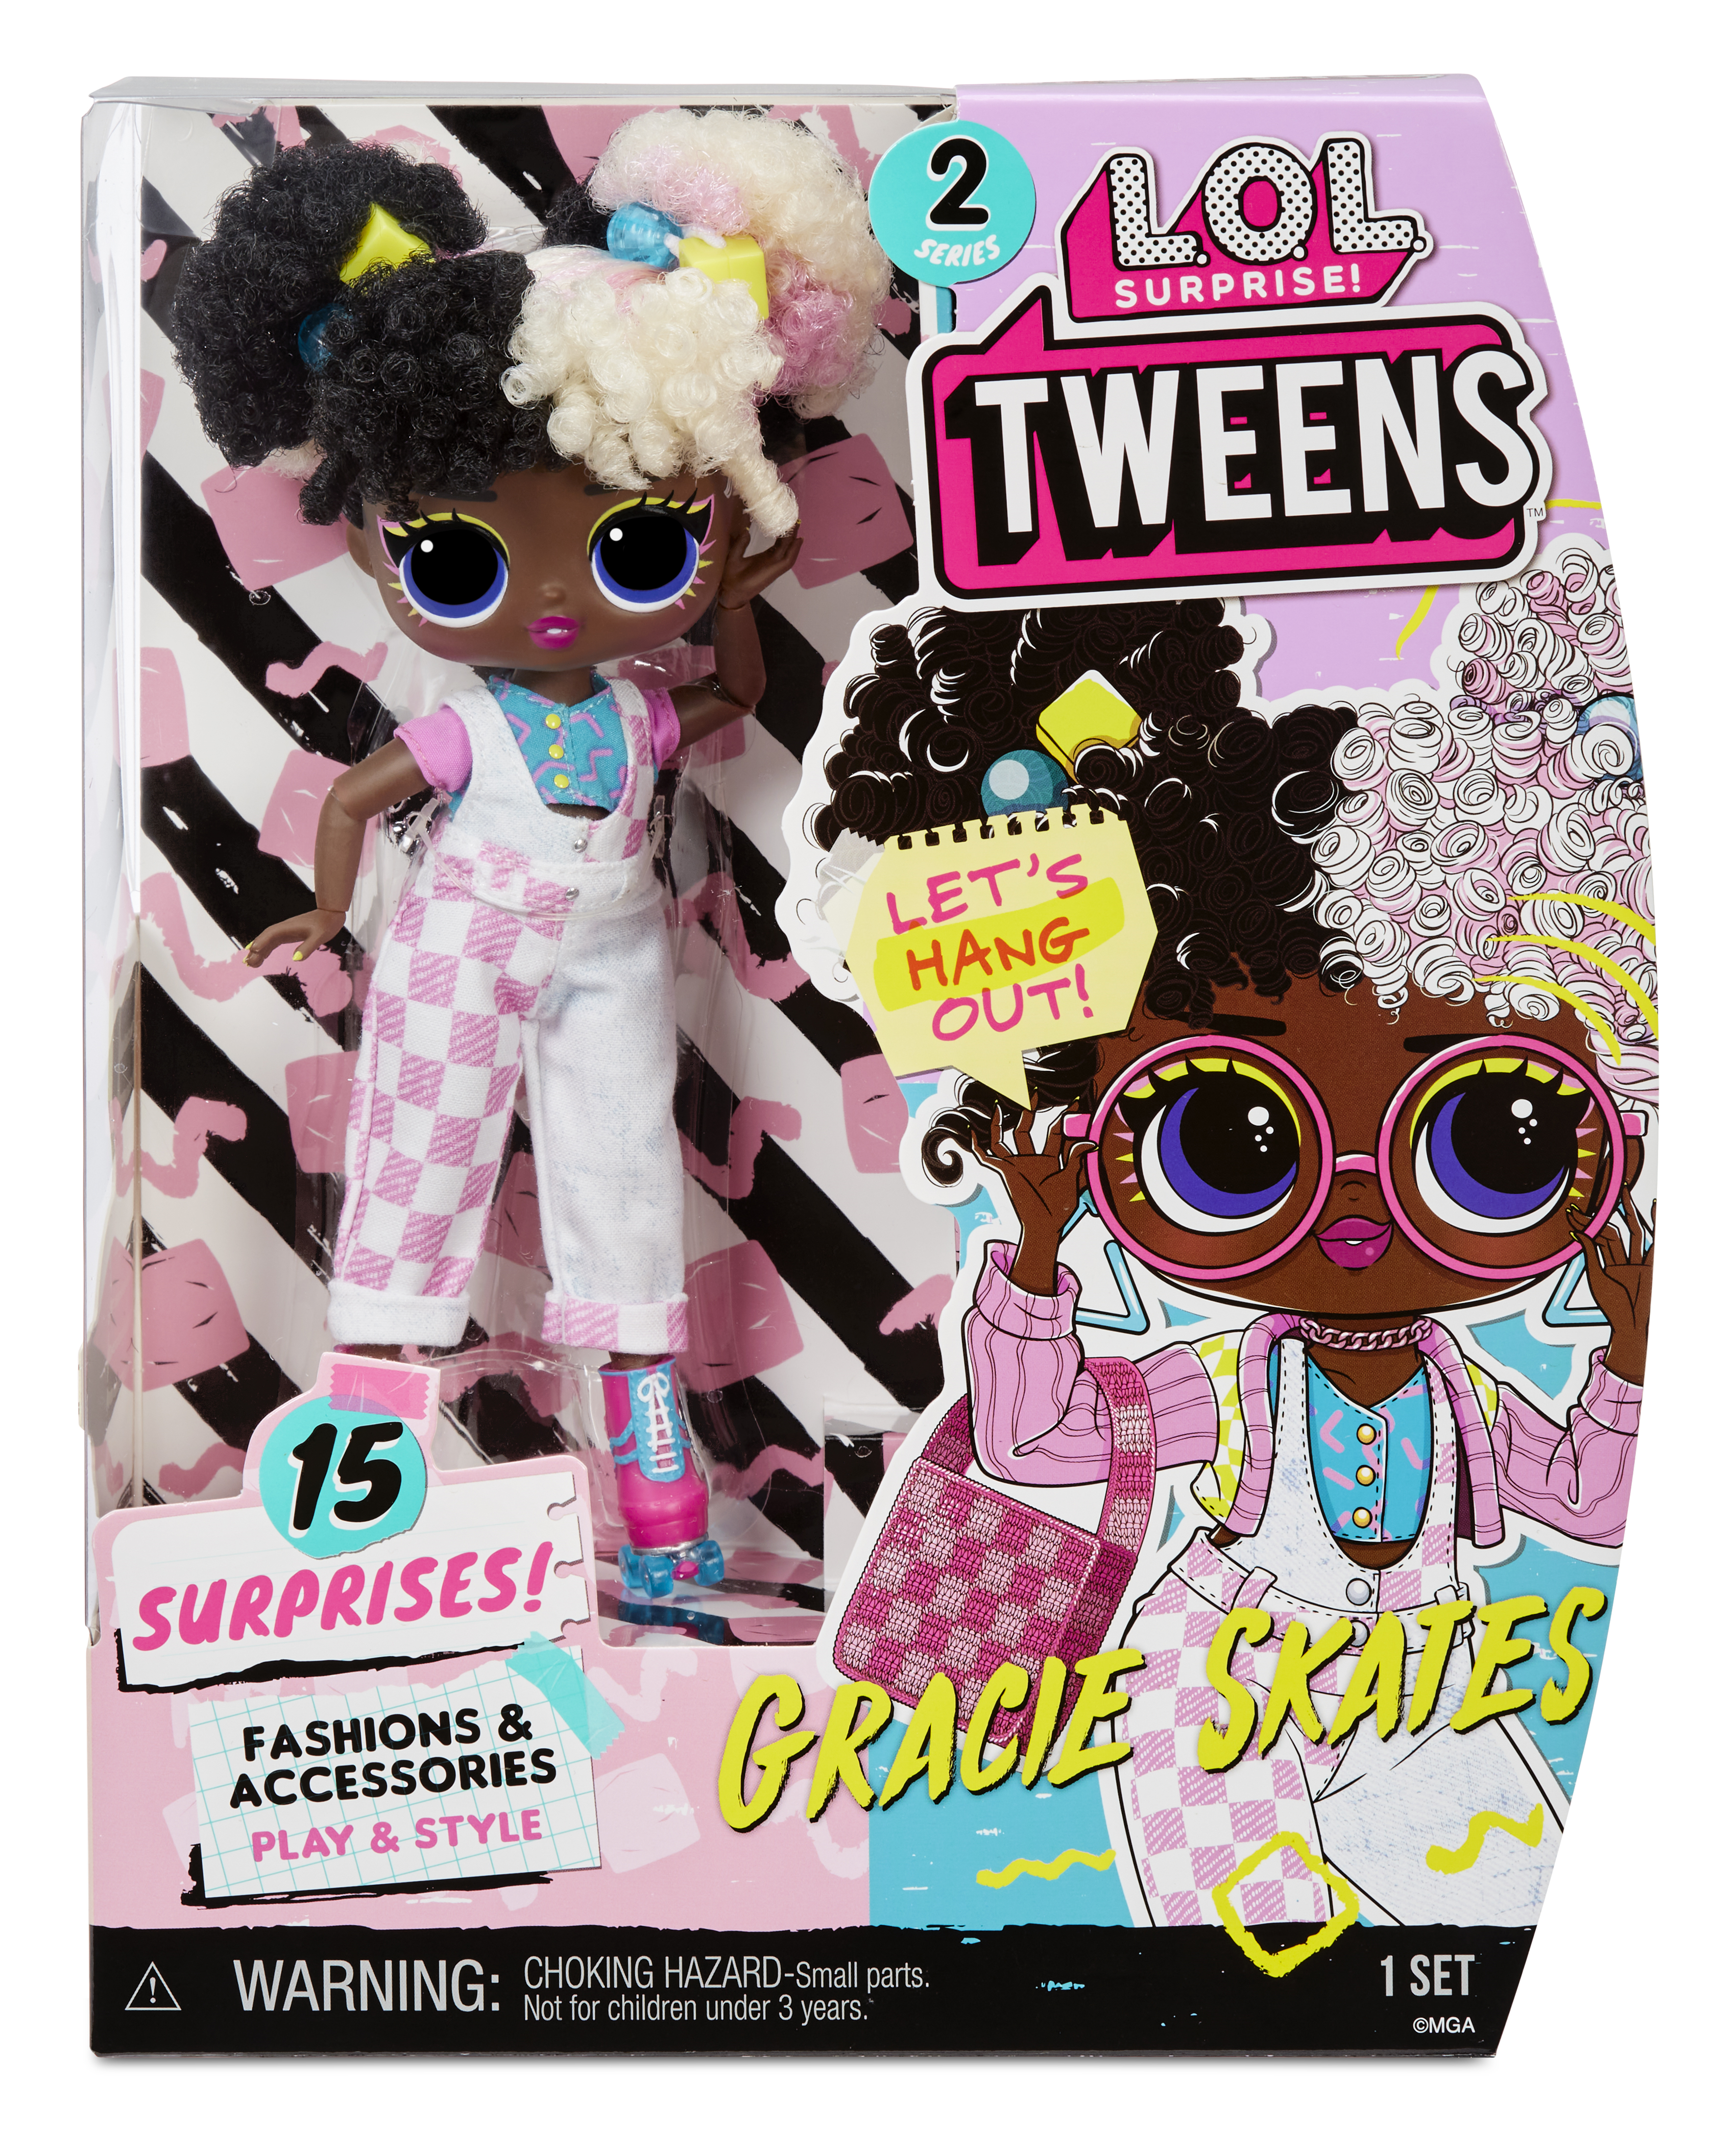 Lol surprise tweens serie 2 gracie skates - bambola da 15cm con 15 sorprese tra cui abiti, accessori, supporto e altro - LOL